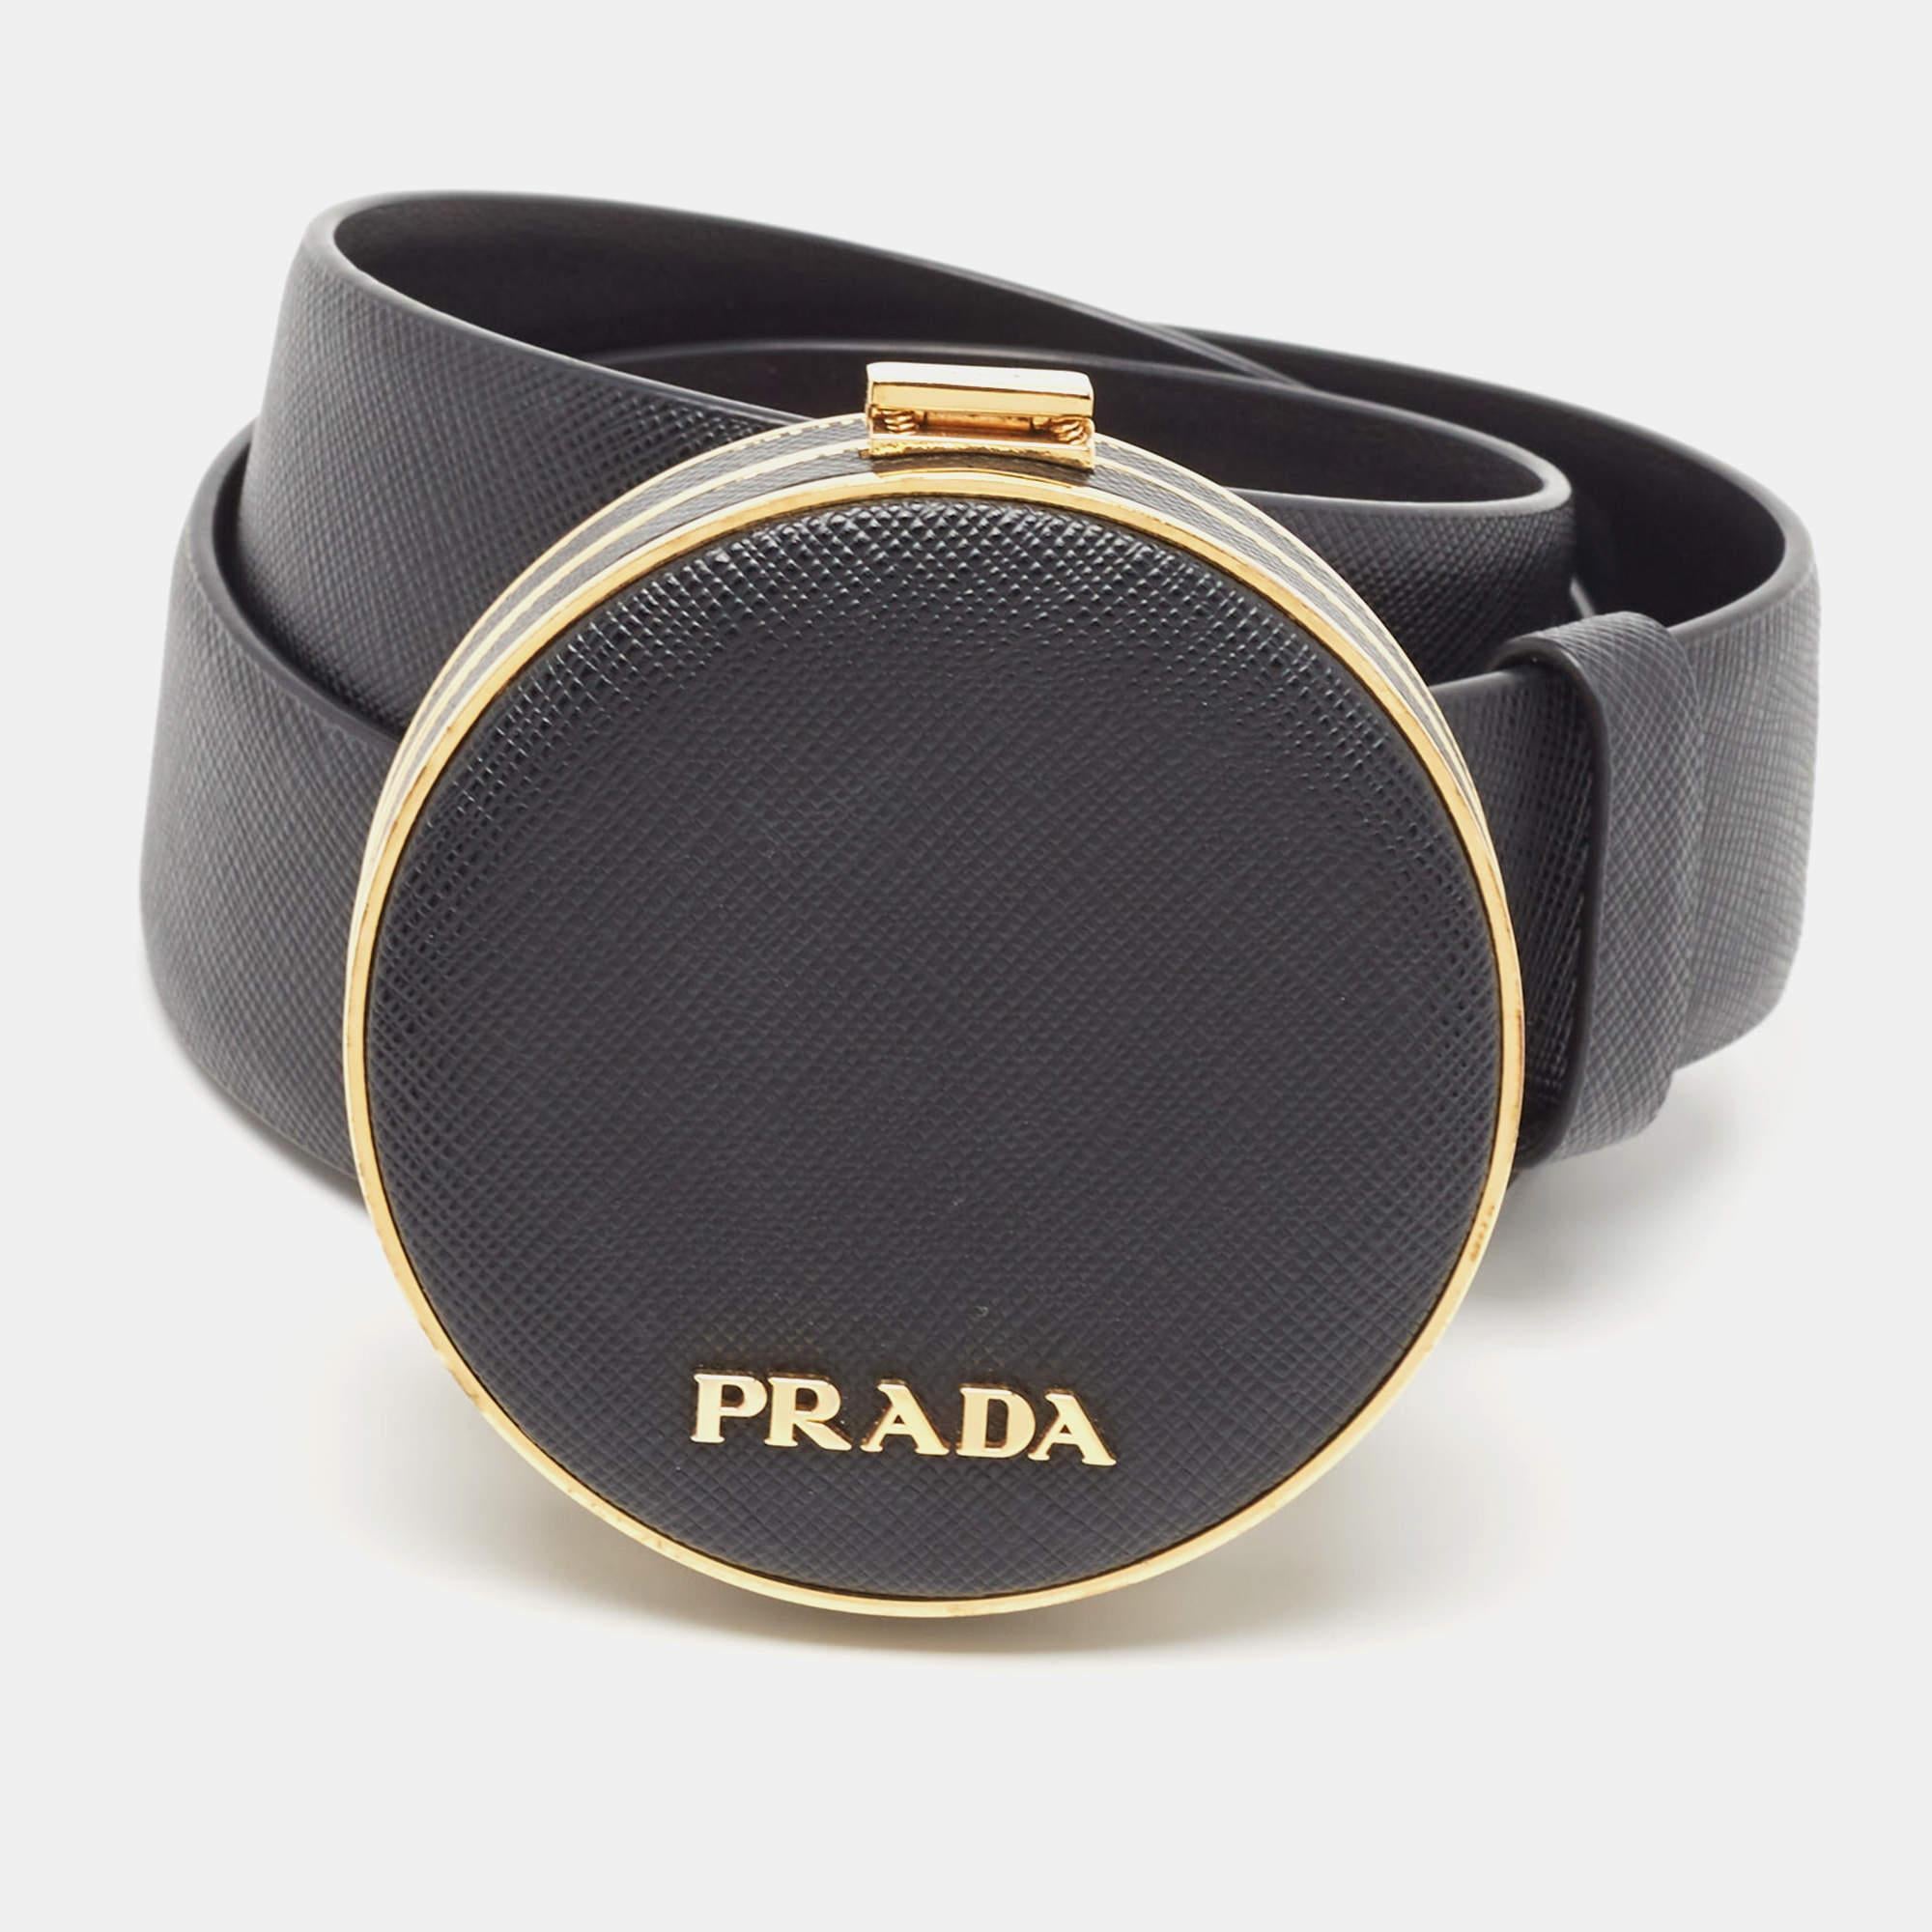 Élevez votre quotient stylistique avec cette ceinture minaudière de Prada. Fabriqué à la perfection, il respire la sophistication et le luxe, ce qui en fait l'accessoire ultime pour ceux qui exigent à la fois qualité et mode.

Comprend : Sac à